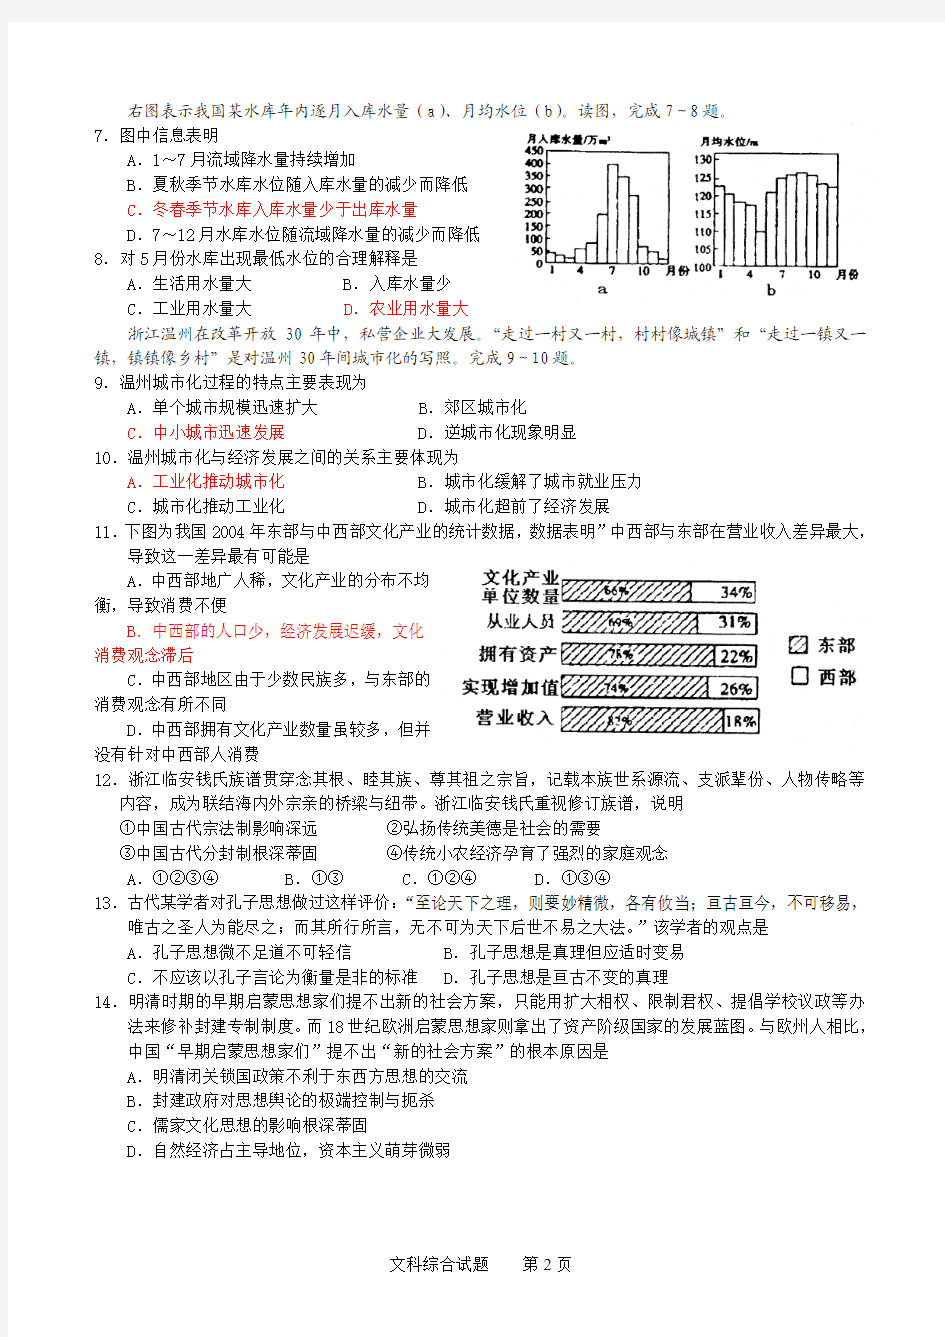 2010年杭州市第二次高考科目教学质量检测文科综合试题(精校版)2010[1].4